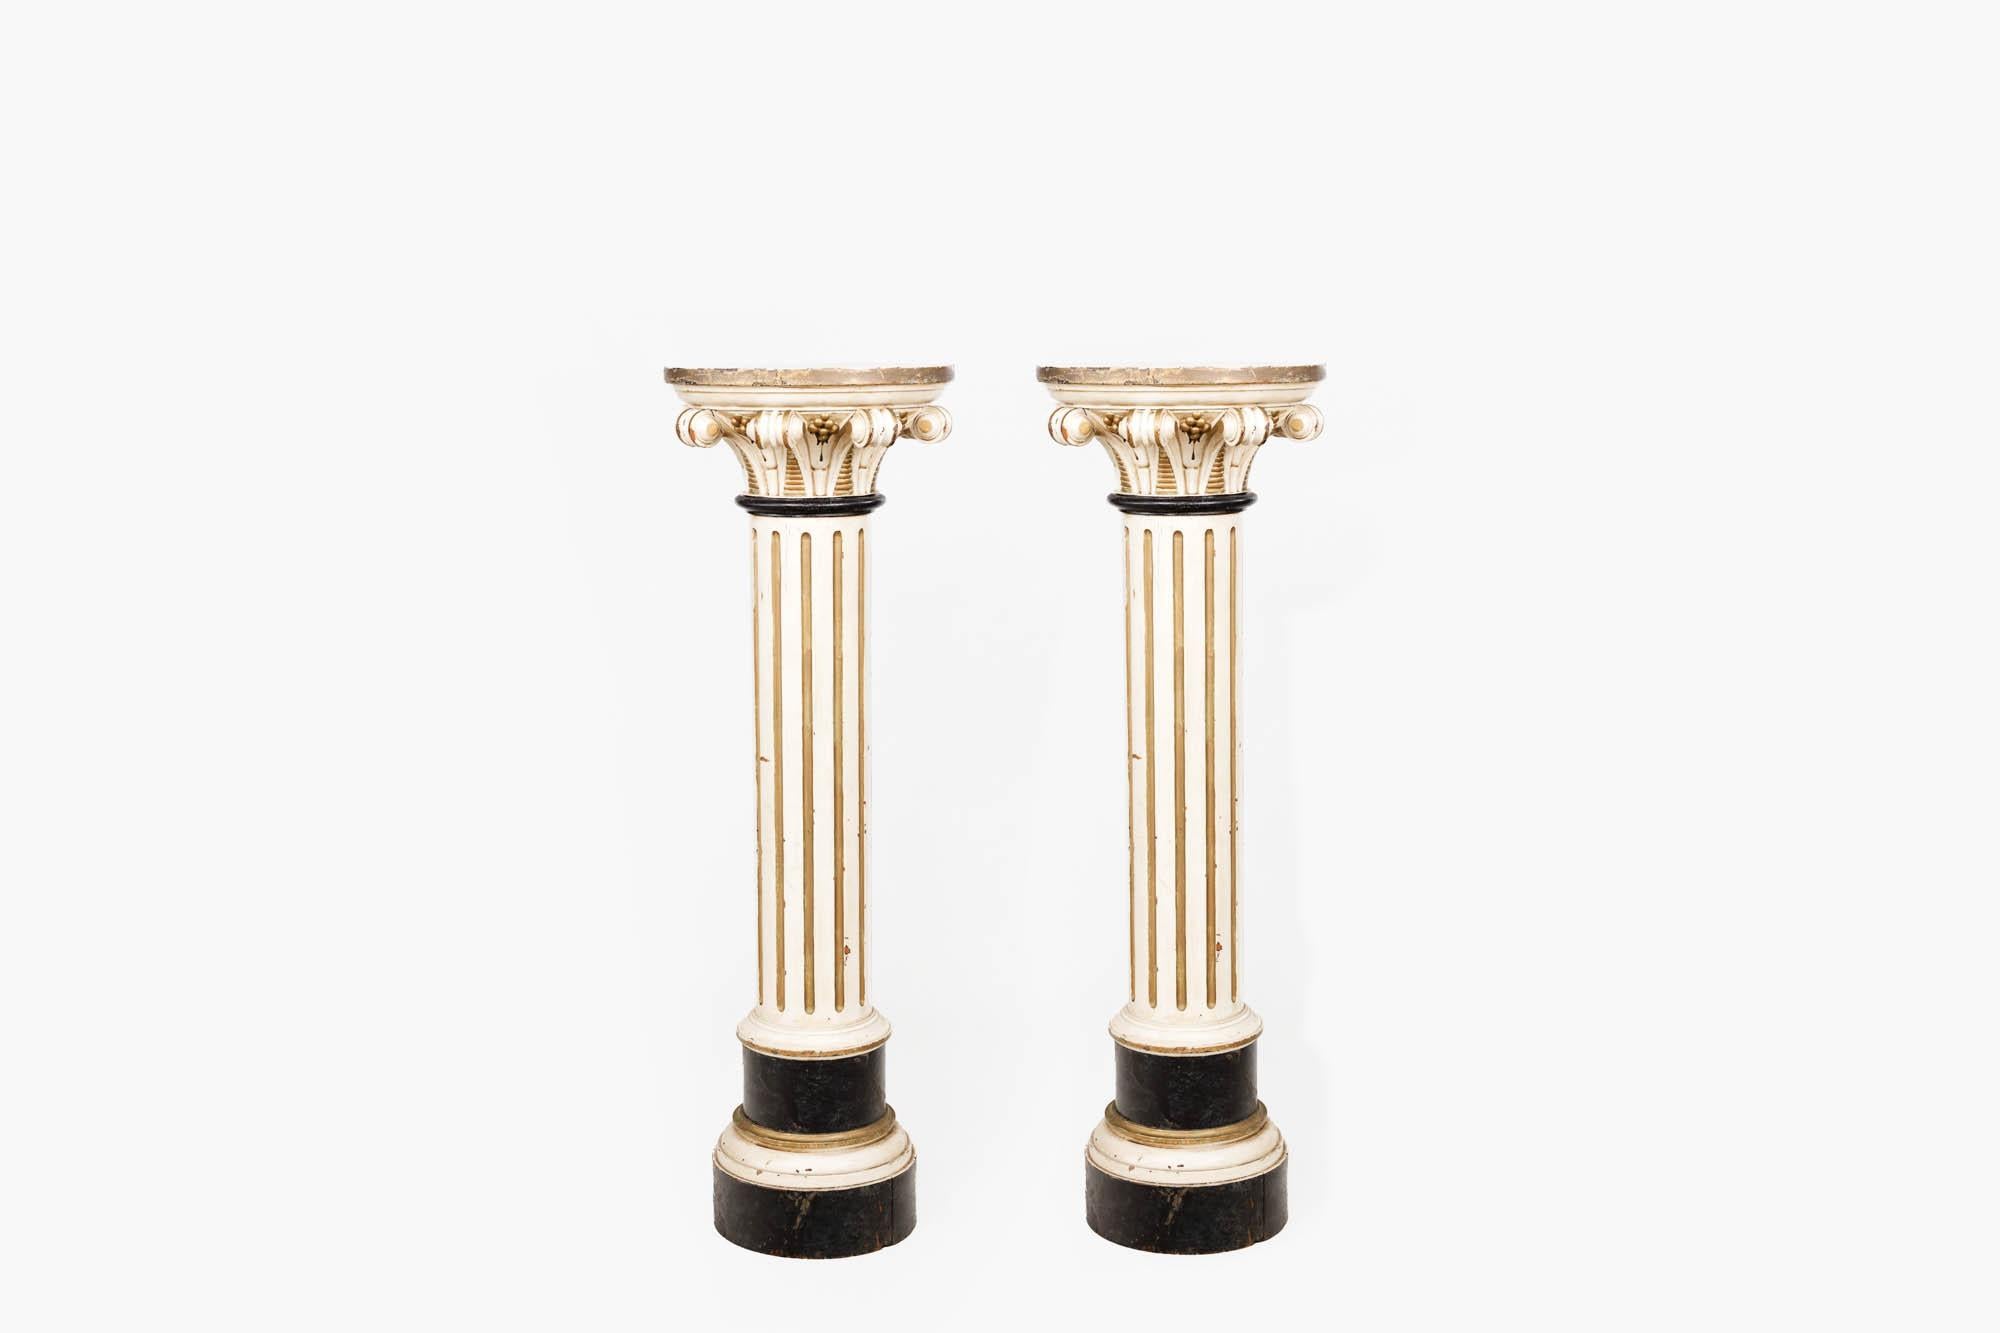 Paar korinthische Säulensockel aus bemalter Kiefer des 19. Jahrhunderts im klassischen italienischen Stil mit Akanthusblättern und kannelierten Details. Das Paar ist in einem cremefarbenen Anstrich mit paketvergoldeten Highlights gehalten.